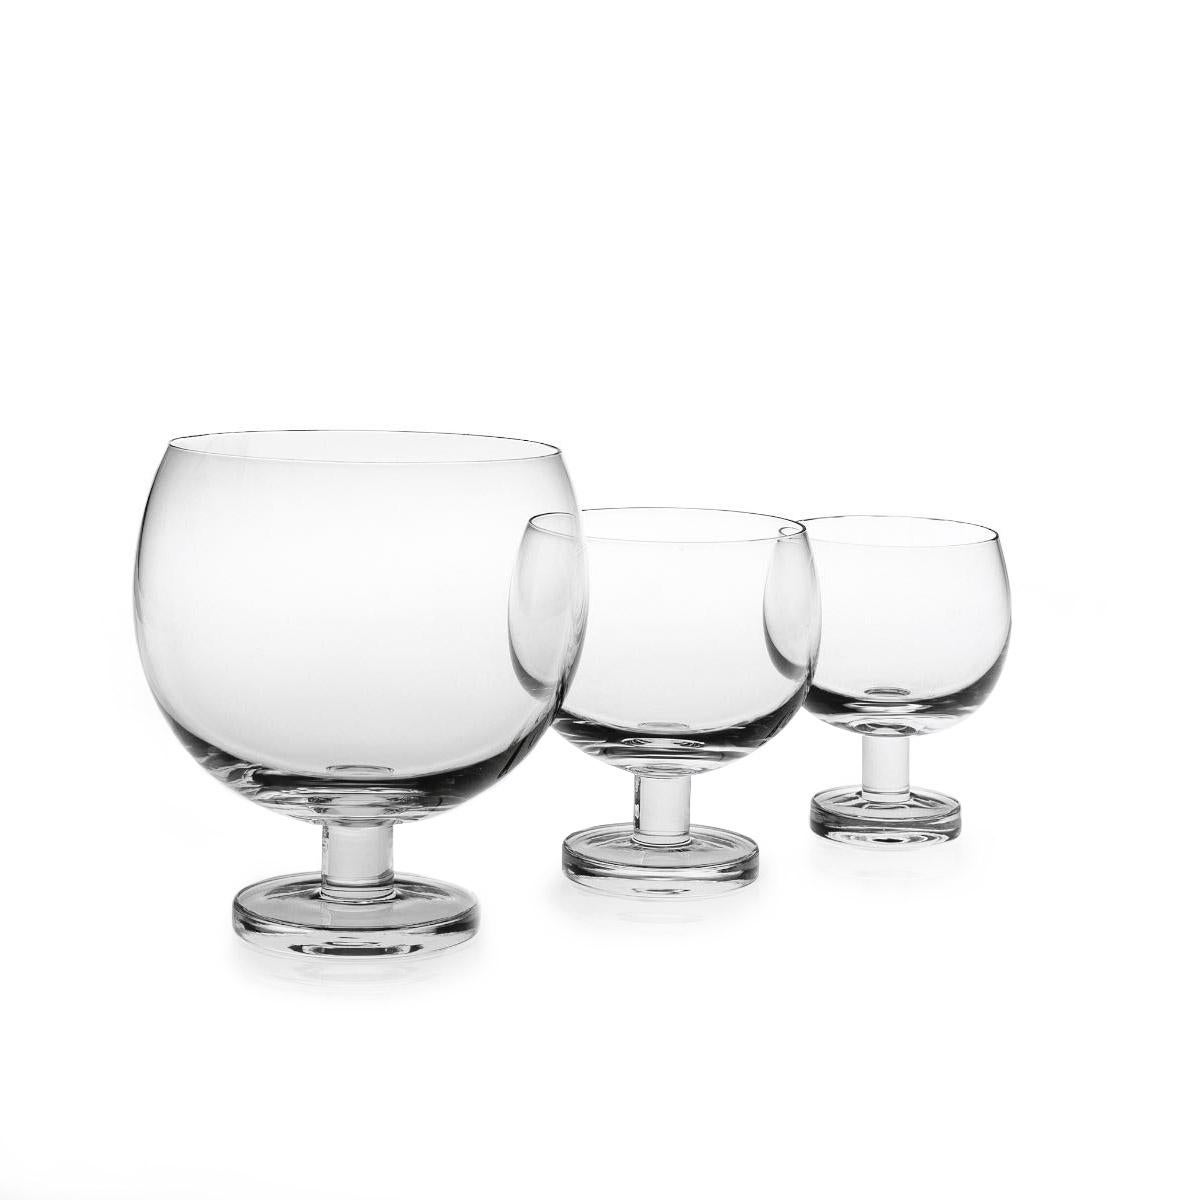 Wasserglas aus geblasenem Glas in einer Form. Die Tulip-Kollektion ist eine Glaswarenfamilie von Aldo Cibic, der diese Stücke auf der Grenze zwischen klassischem und postmodernem Design entworfen hat. Die kühn-schlichten geometrischen Formen sind